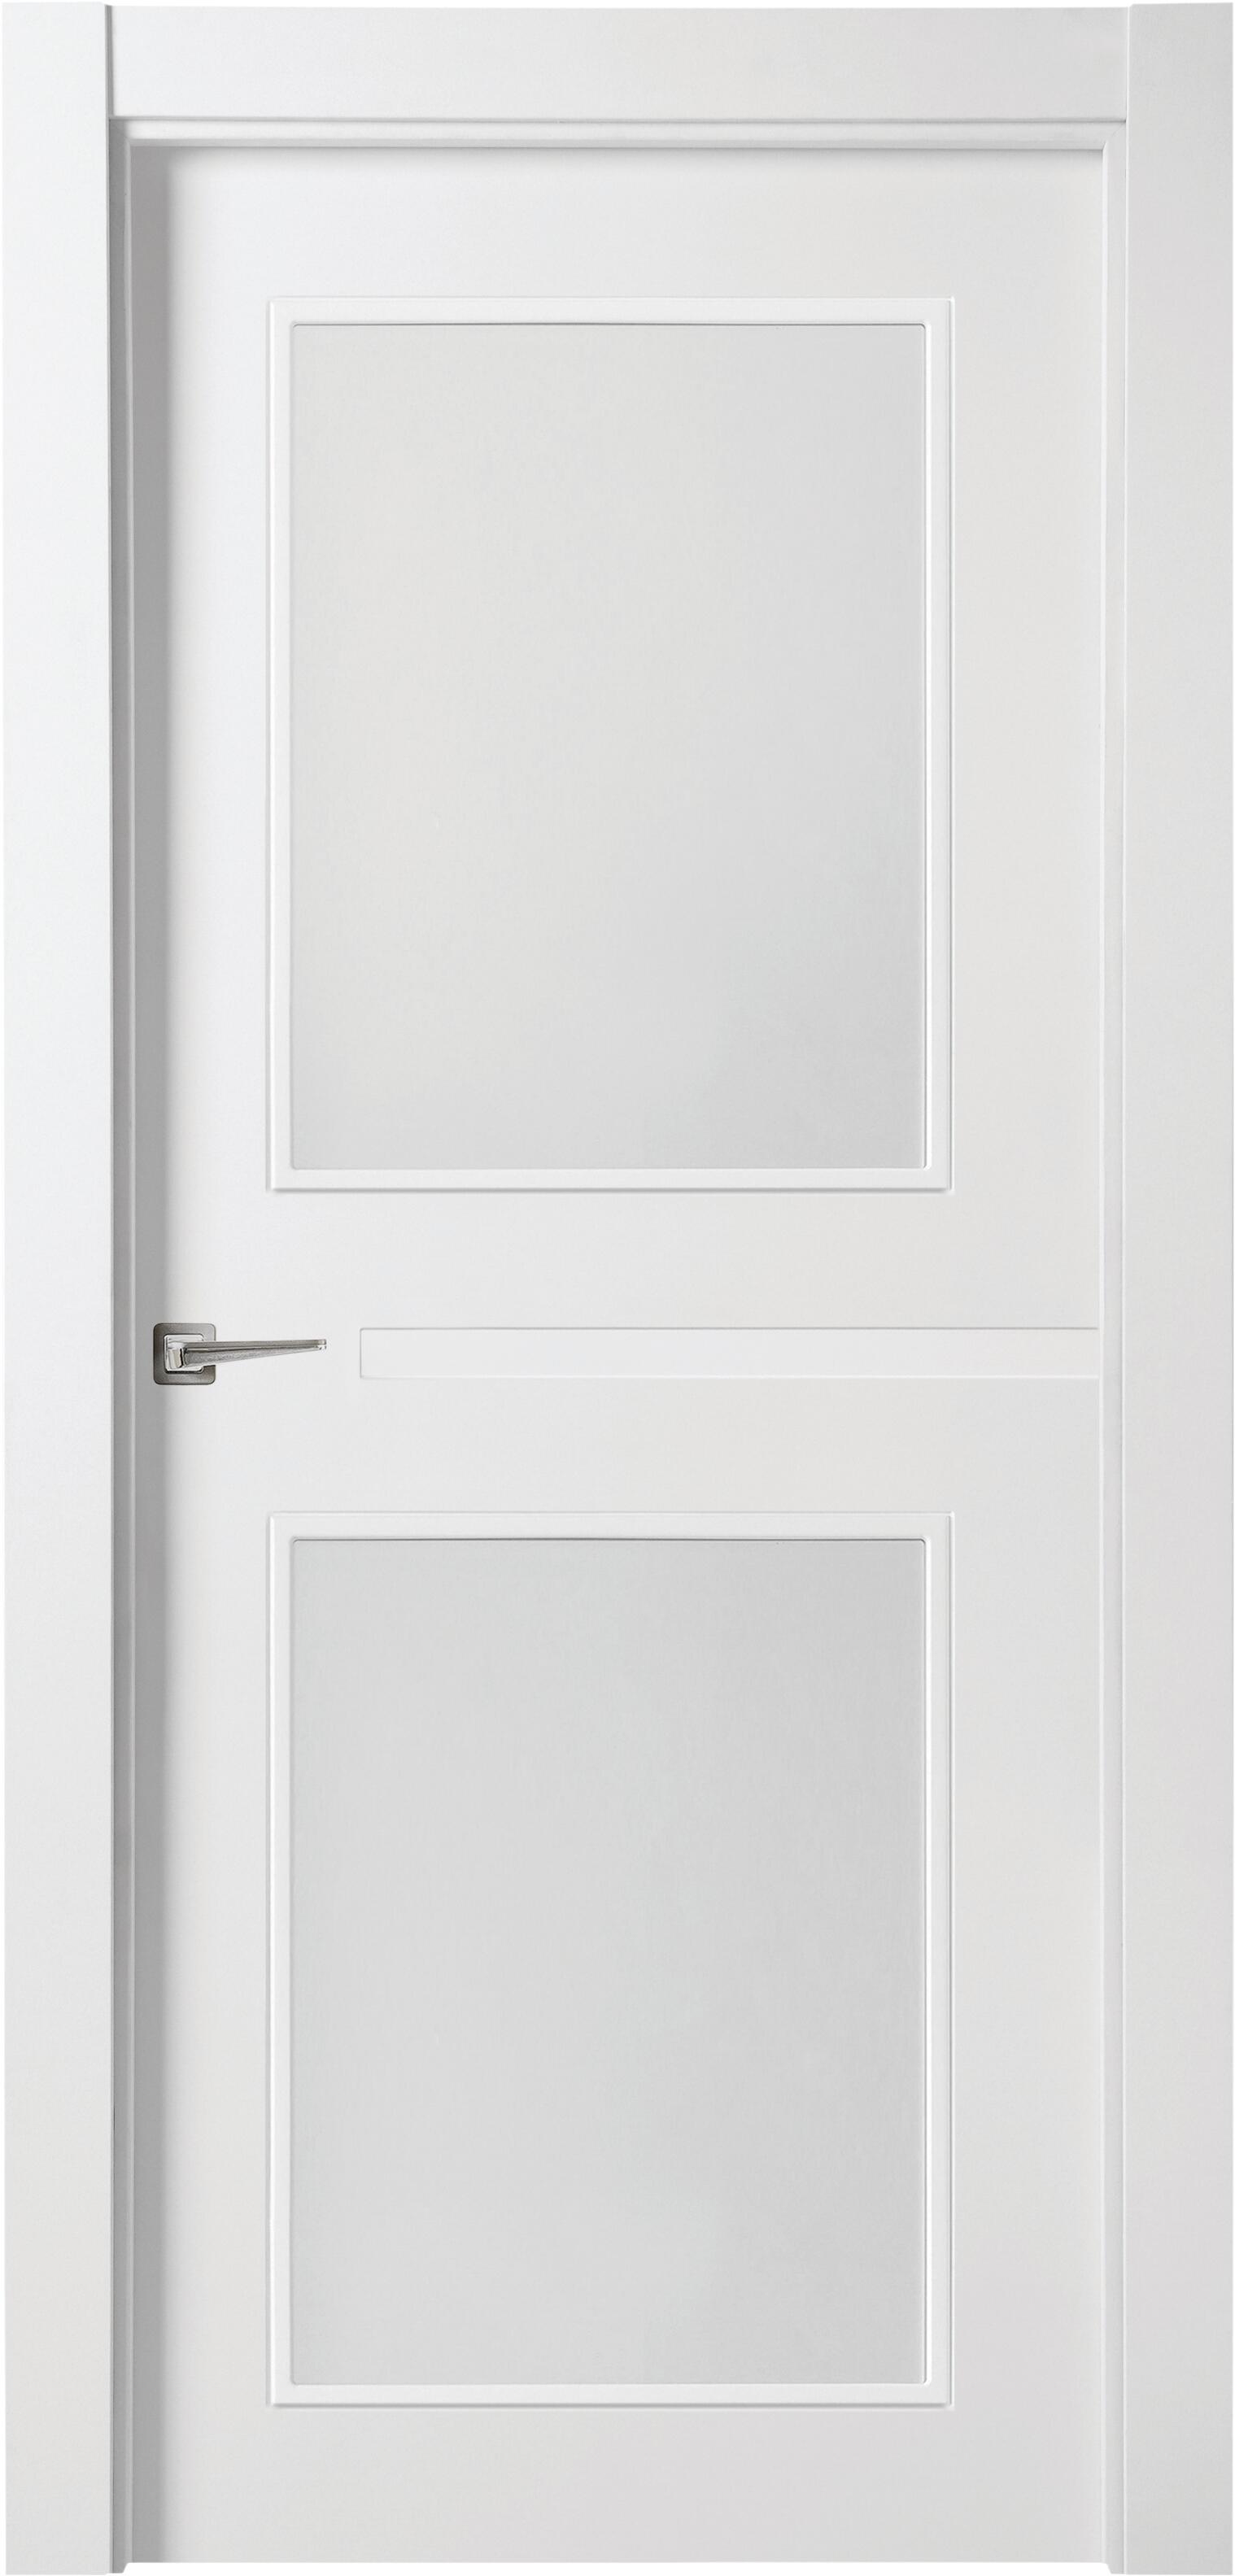 Puerta denver blanco apertura derecha con cristal de 9x92,5cm